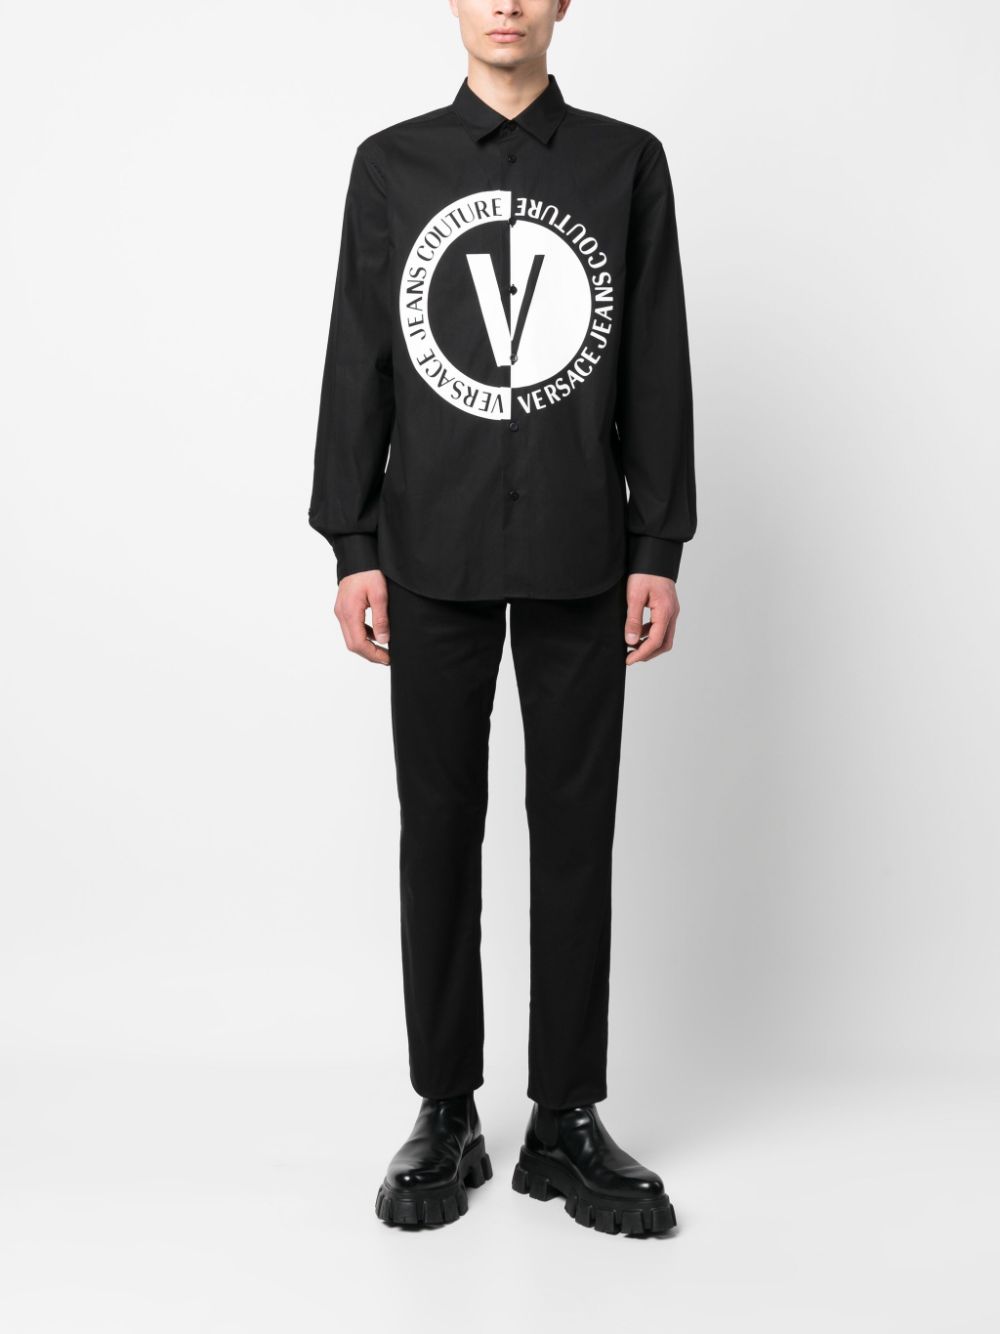 Versace Jeans Couture T-shirt met logoprint - Zwart